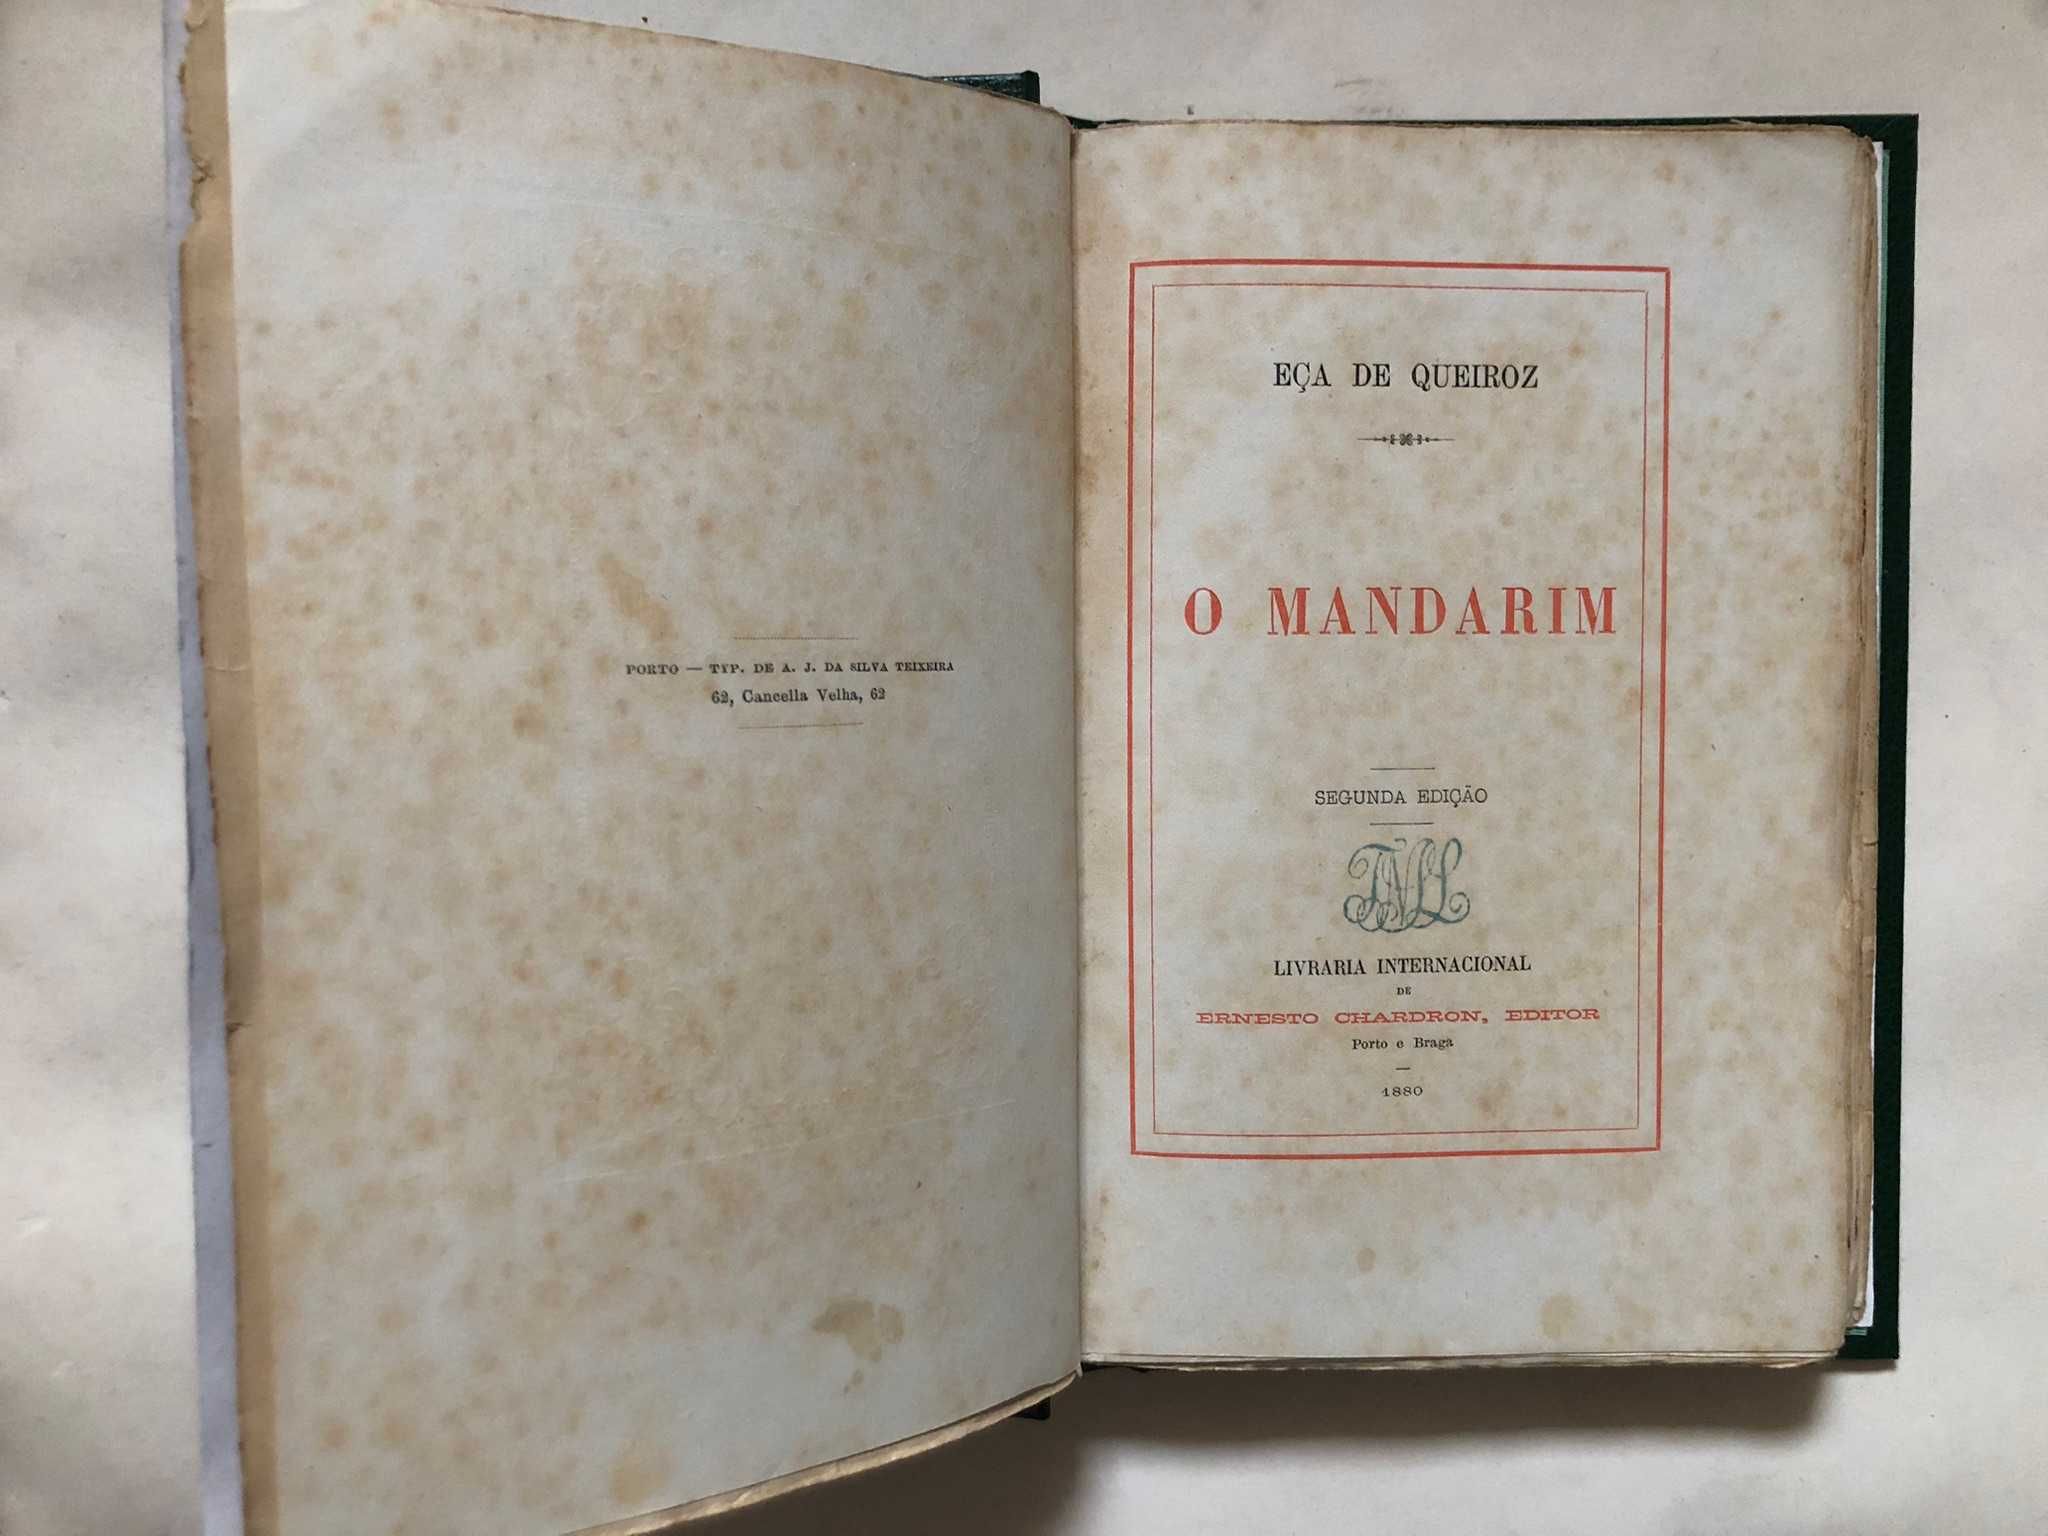 O Mandarim, 2ª Edição, Eça de Queiroz, 1880